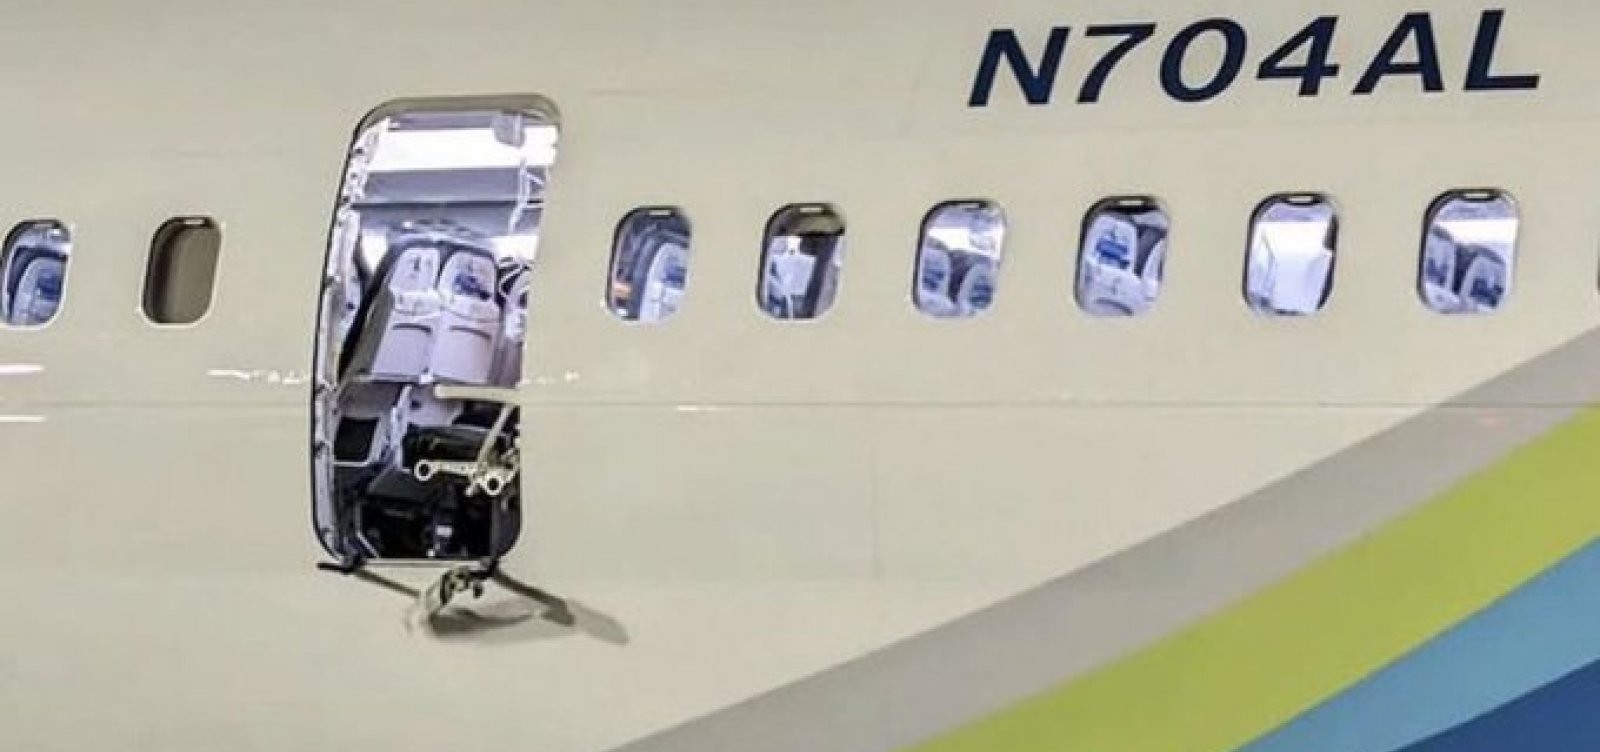 Brasil suspende uso de Boeing que perdeu janela em voo nos EUA